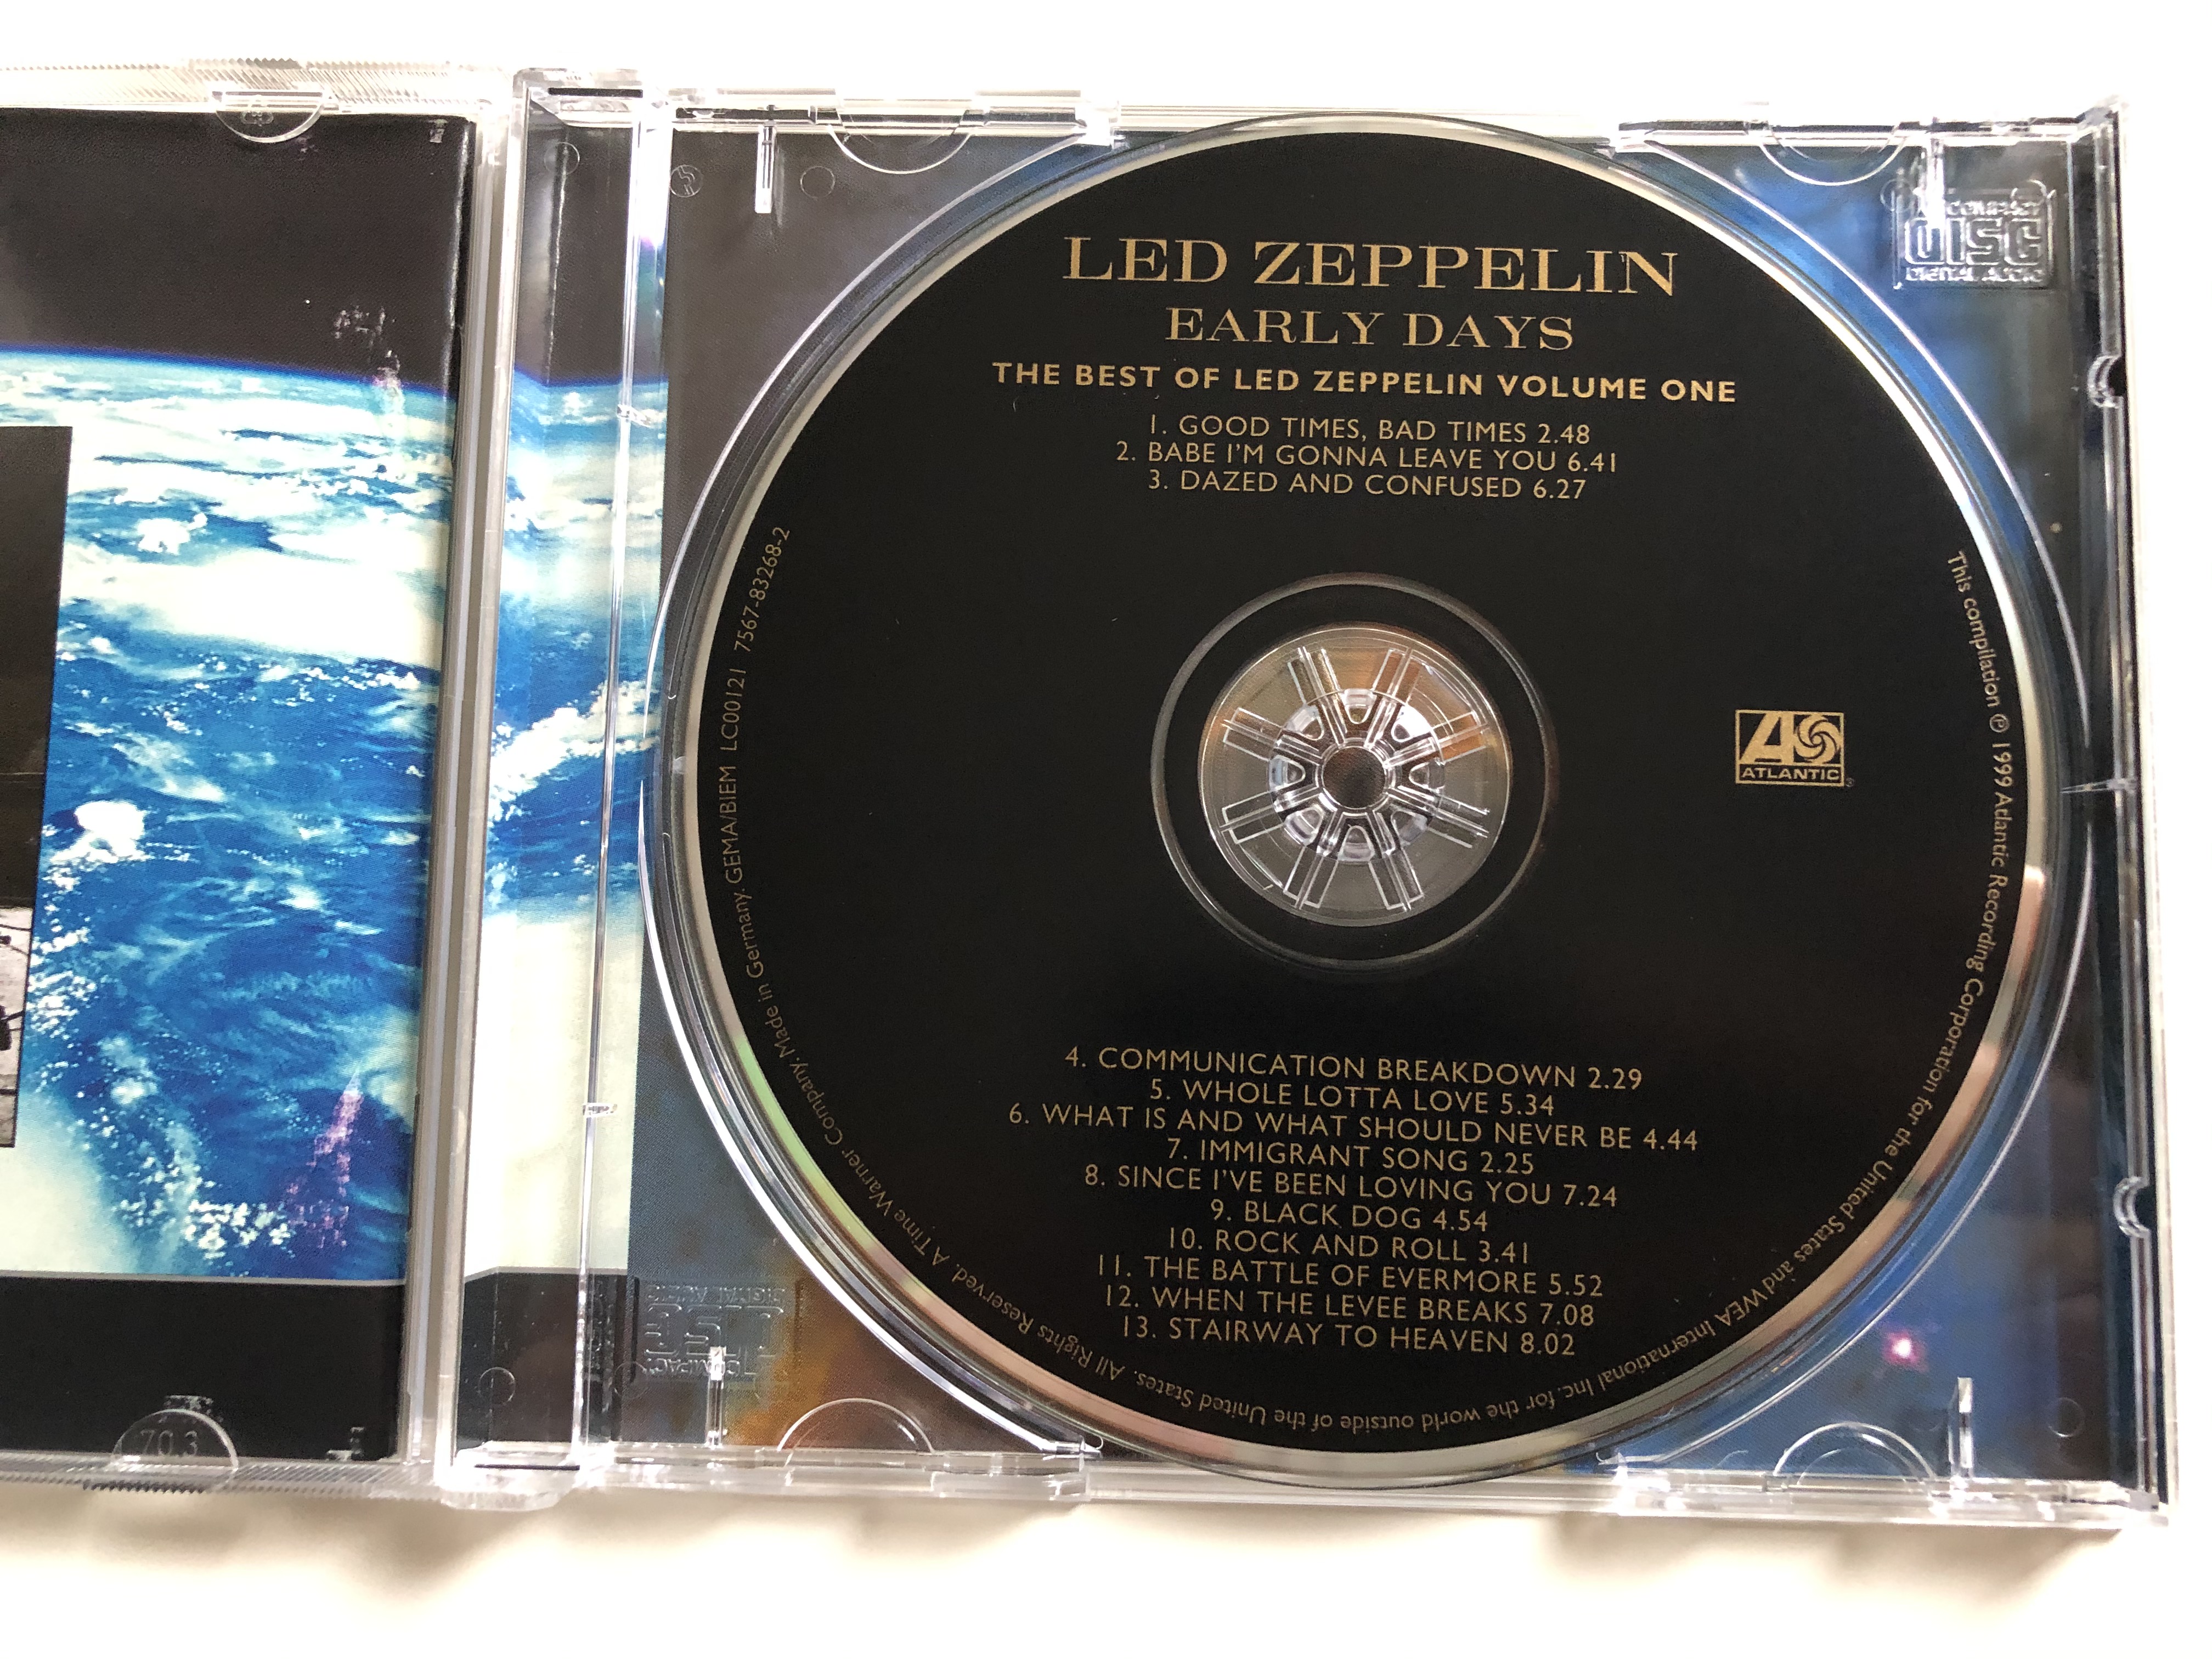 led-zeppelin-latter-days-the-best-of-led-zeppelin-volume-two-atlantic-audio-cd-2000-7567-83278-2-13-.jpg